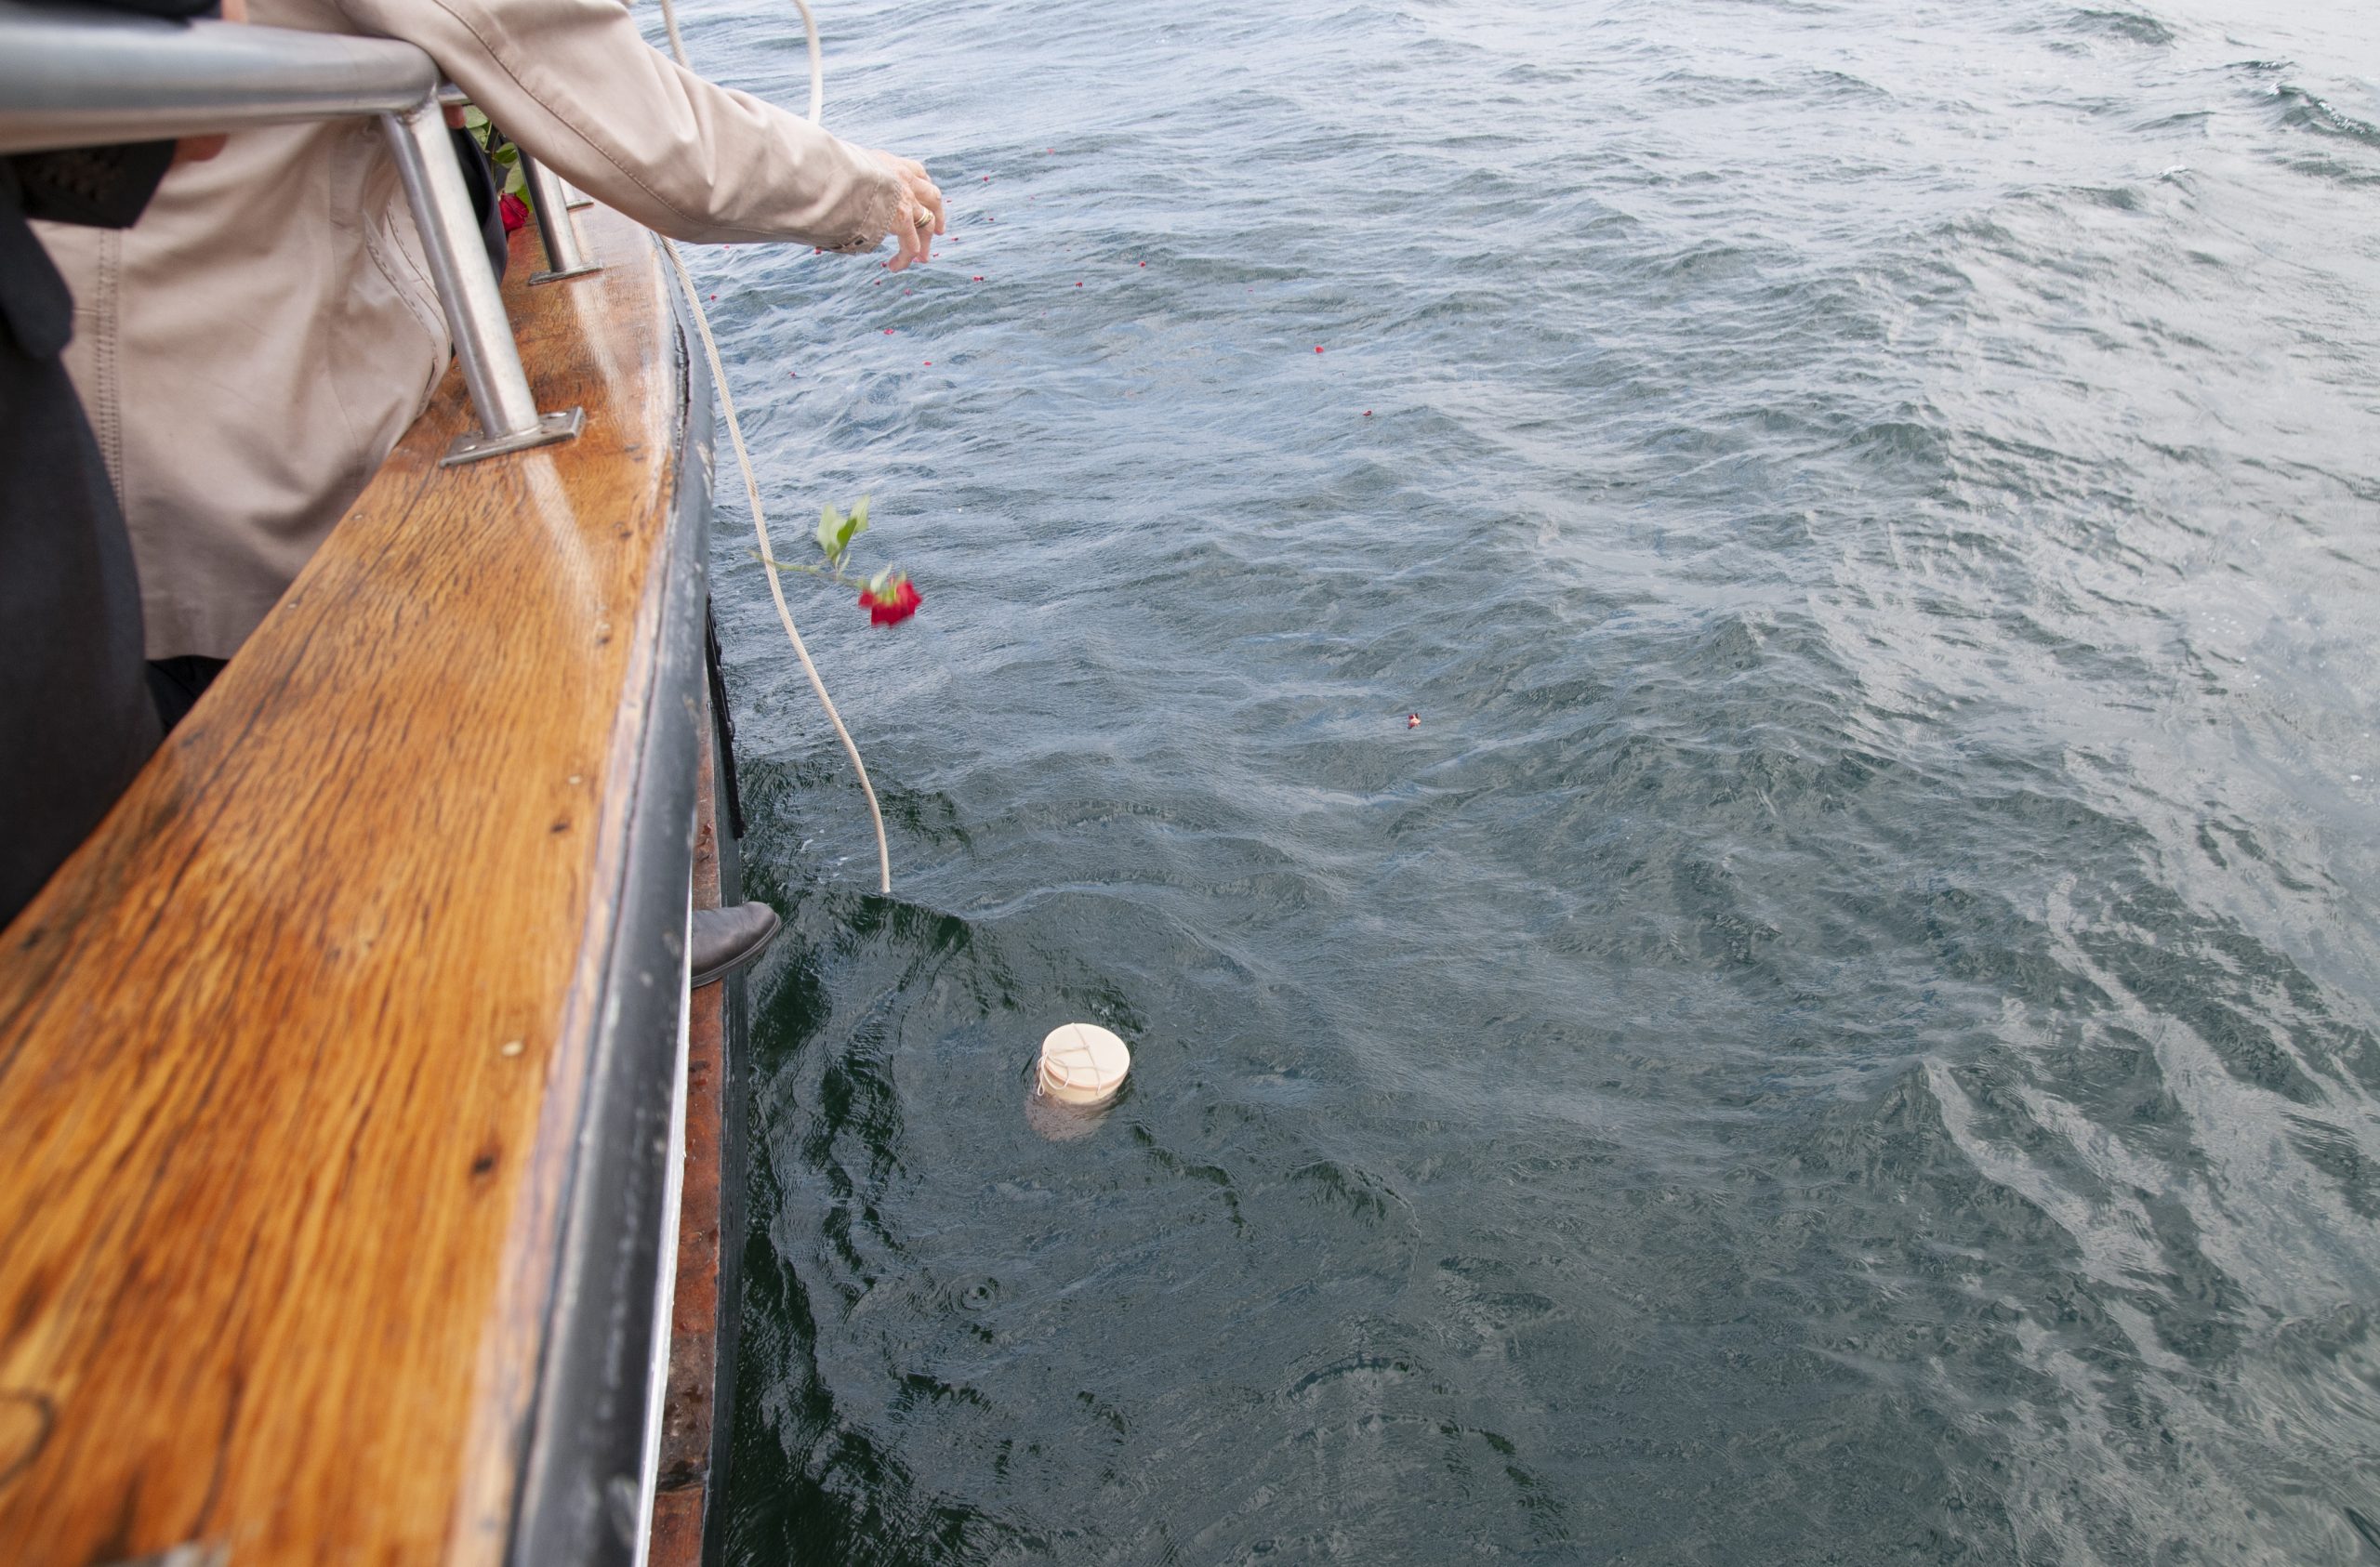 Bestattung auf hoher See, eine Urne mit den sterblichen Überresten wird dem Meer übergeben